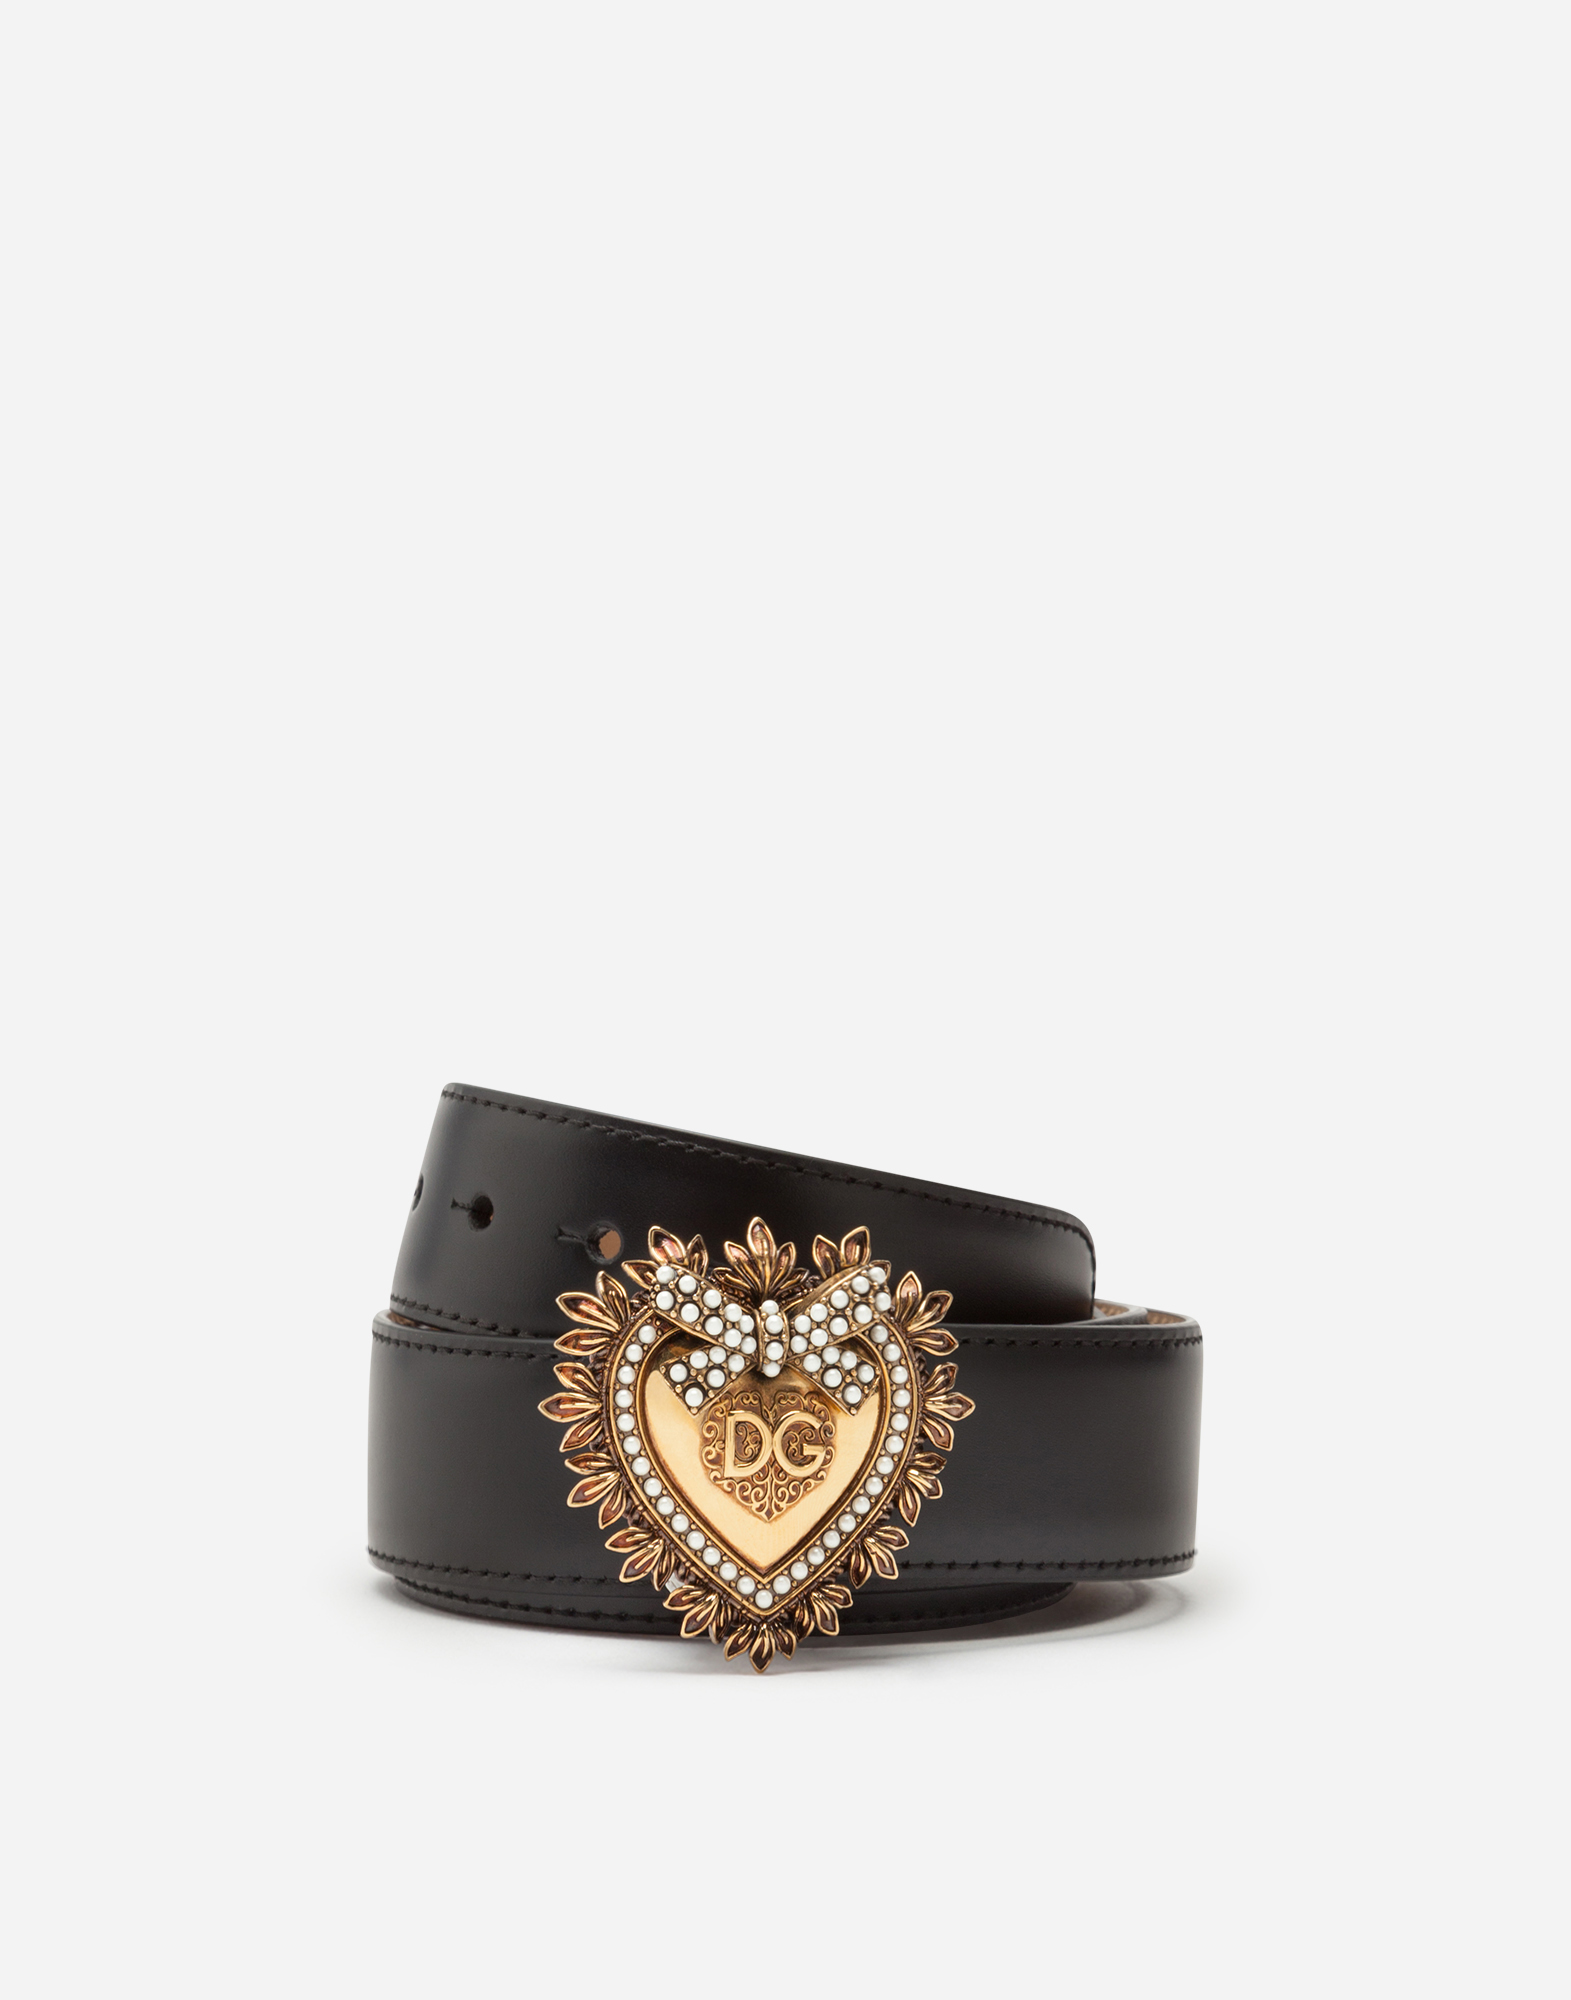 Devotion belt in lux leather in Black